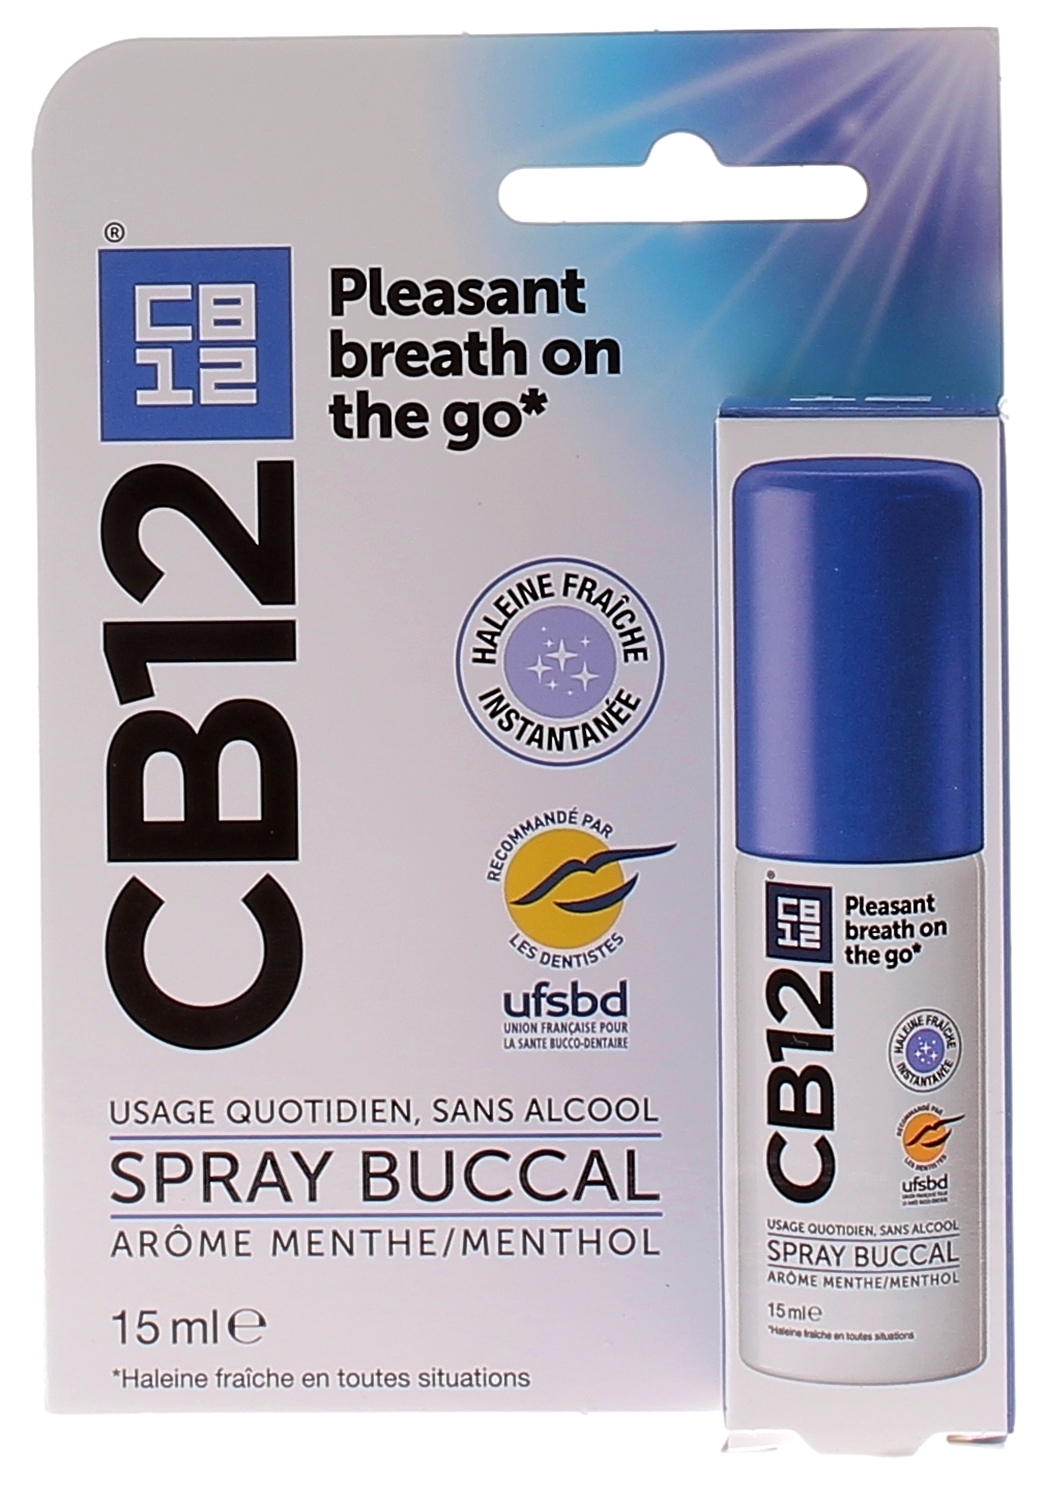 https://www.pharmashopi.com/images/Image/CB12-Spray-Buccal-sans-alcool-menthe-spray-de-15-ml-3401-1.jpg